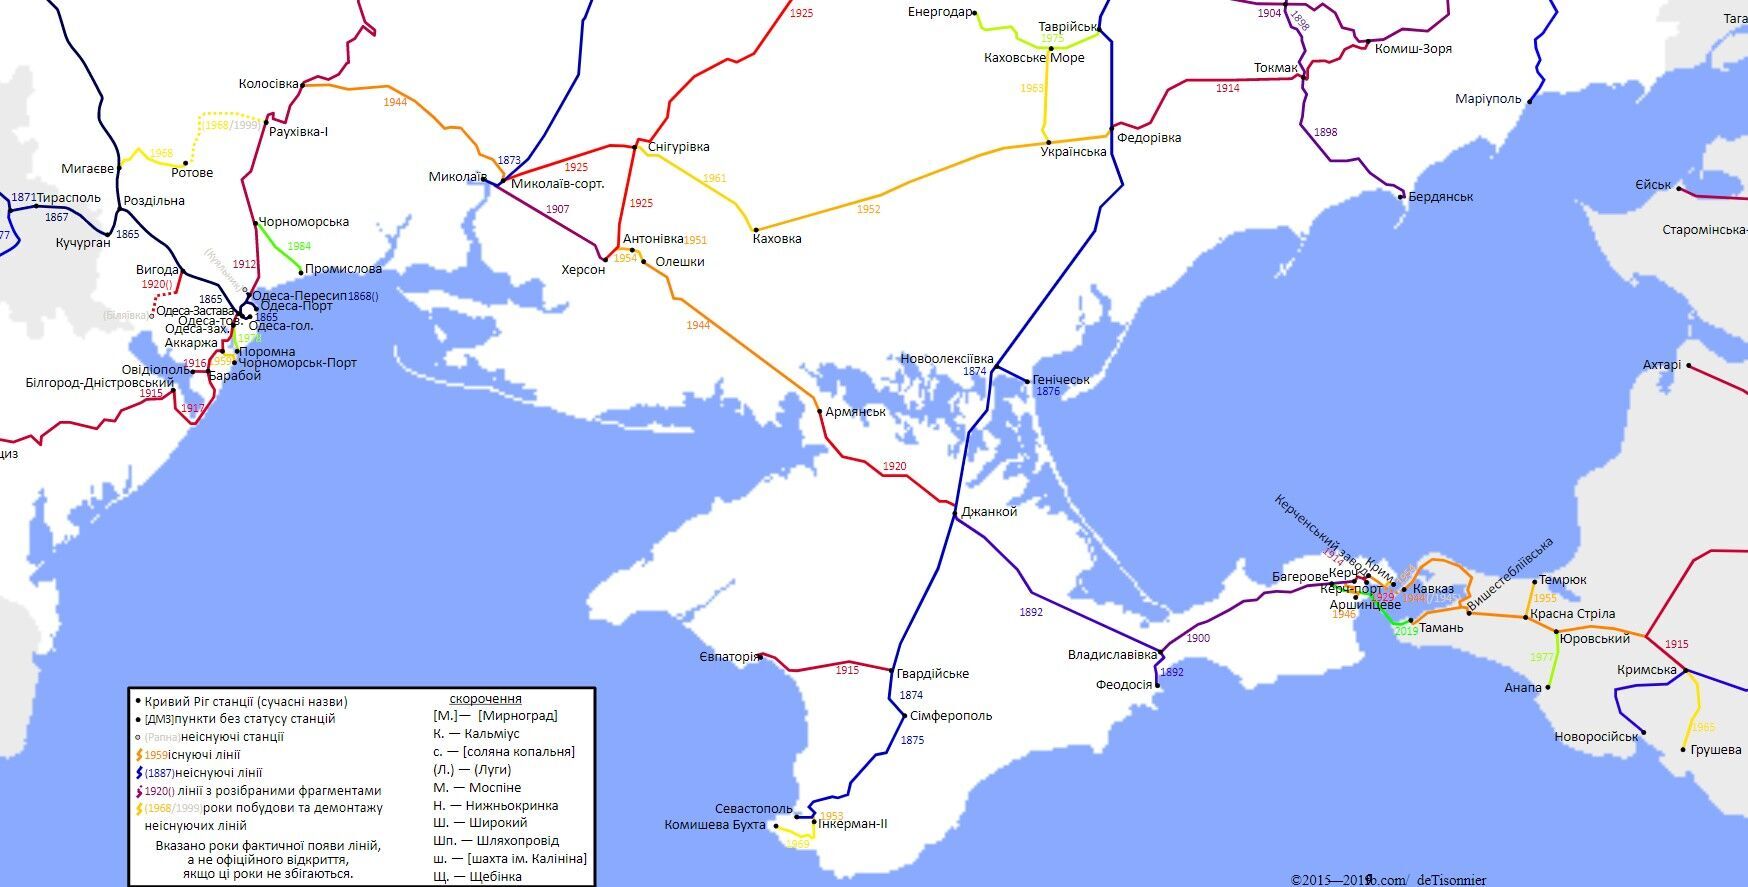 Карта железнодорожных путей в Украине - фрагмент, Крым